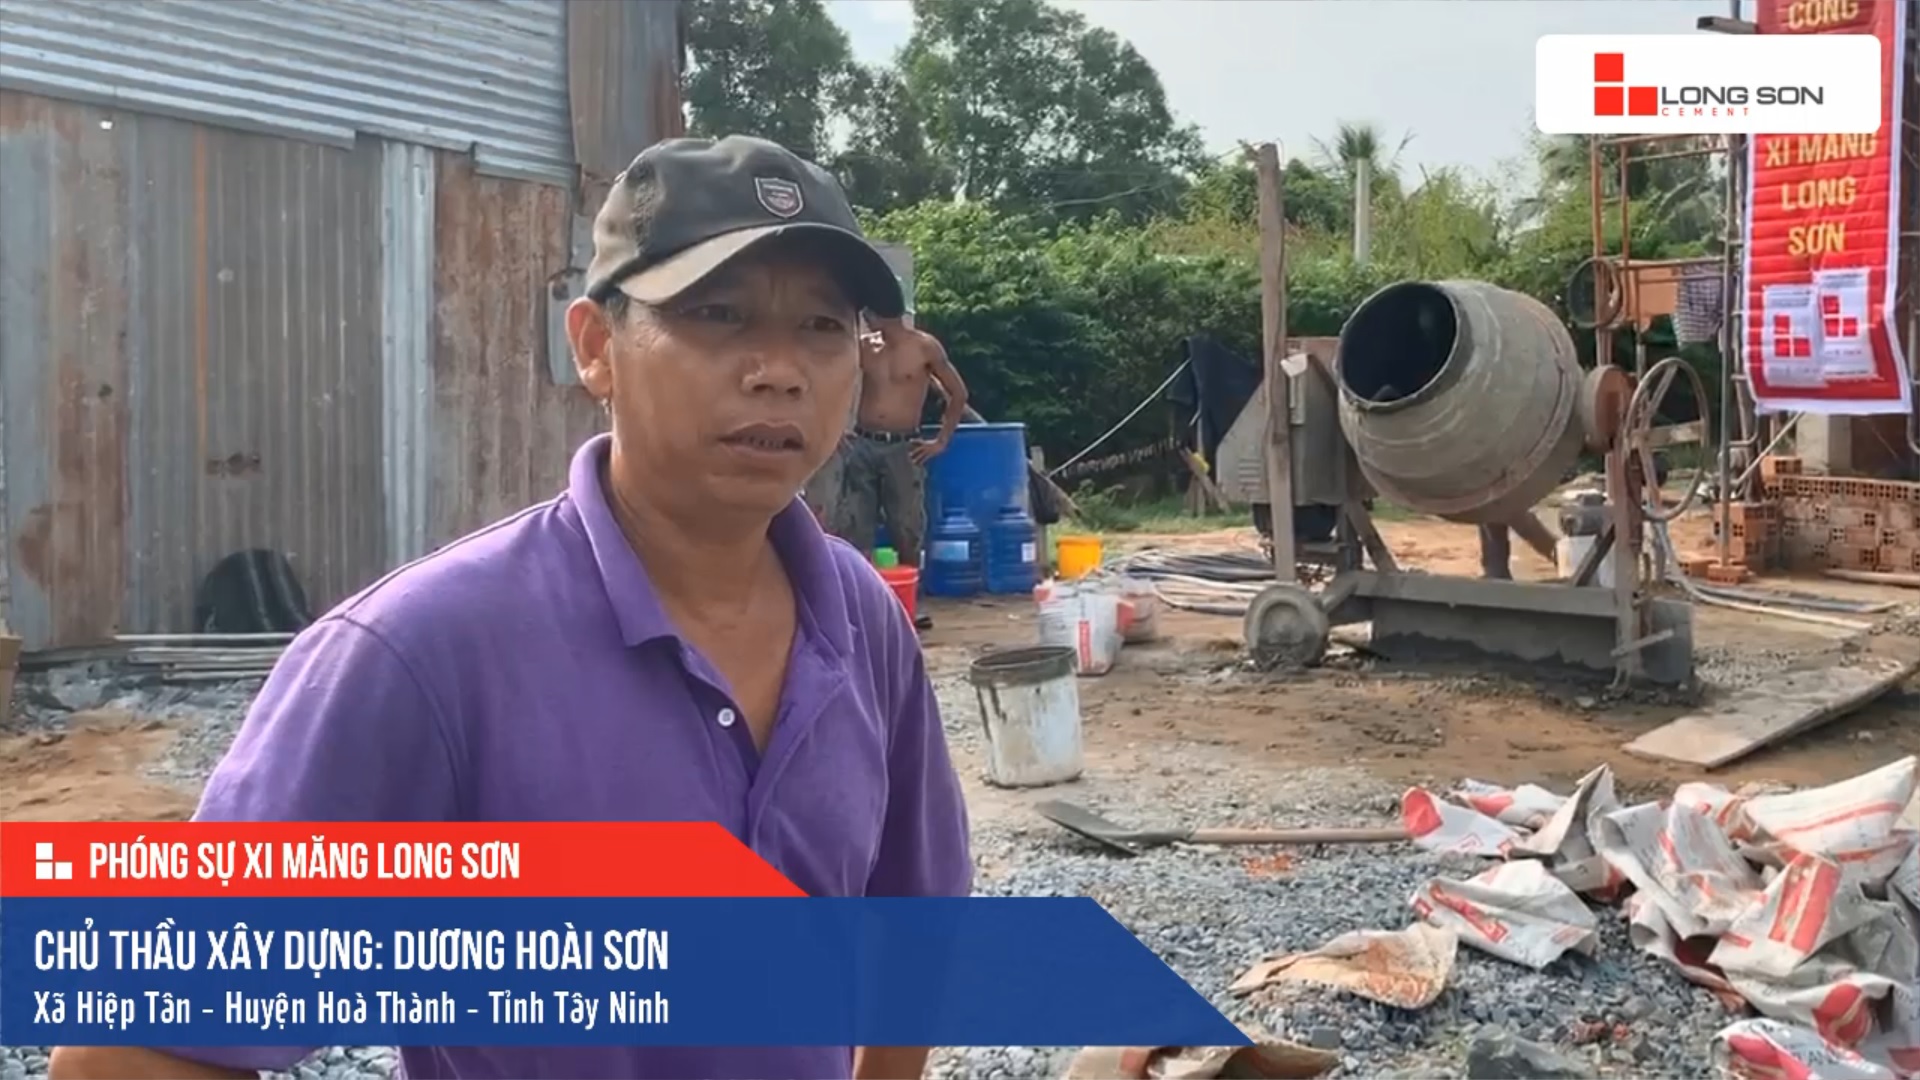 Phóng sự công trình sử dụng Xi măng Long Sơn tại Tây Ninh 08.11.2019